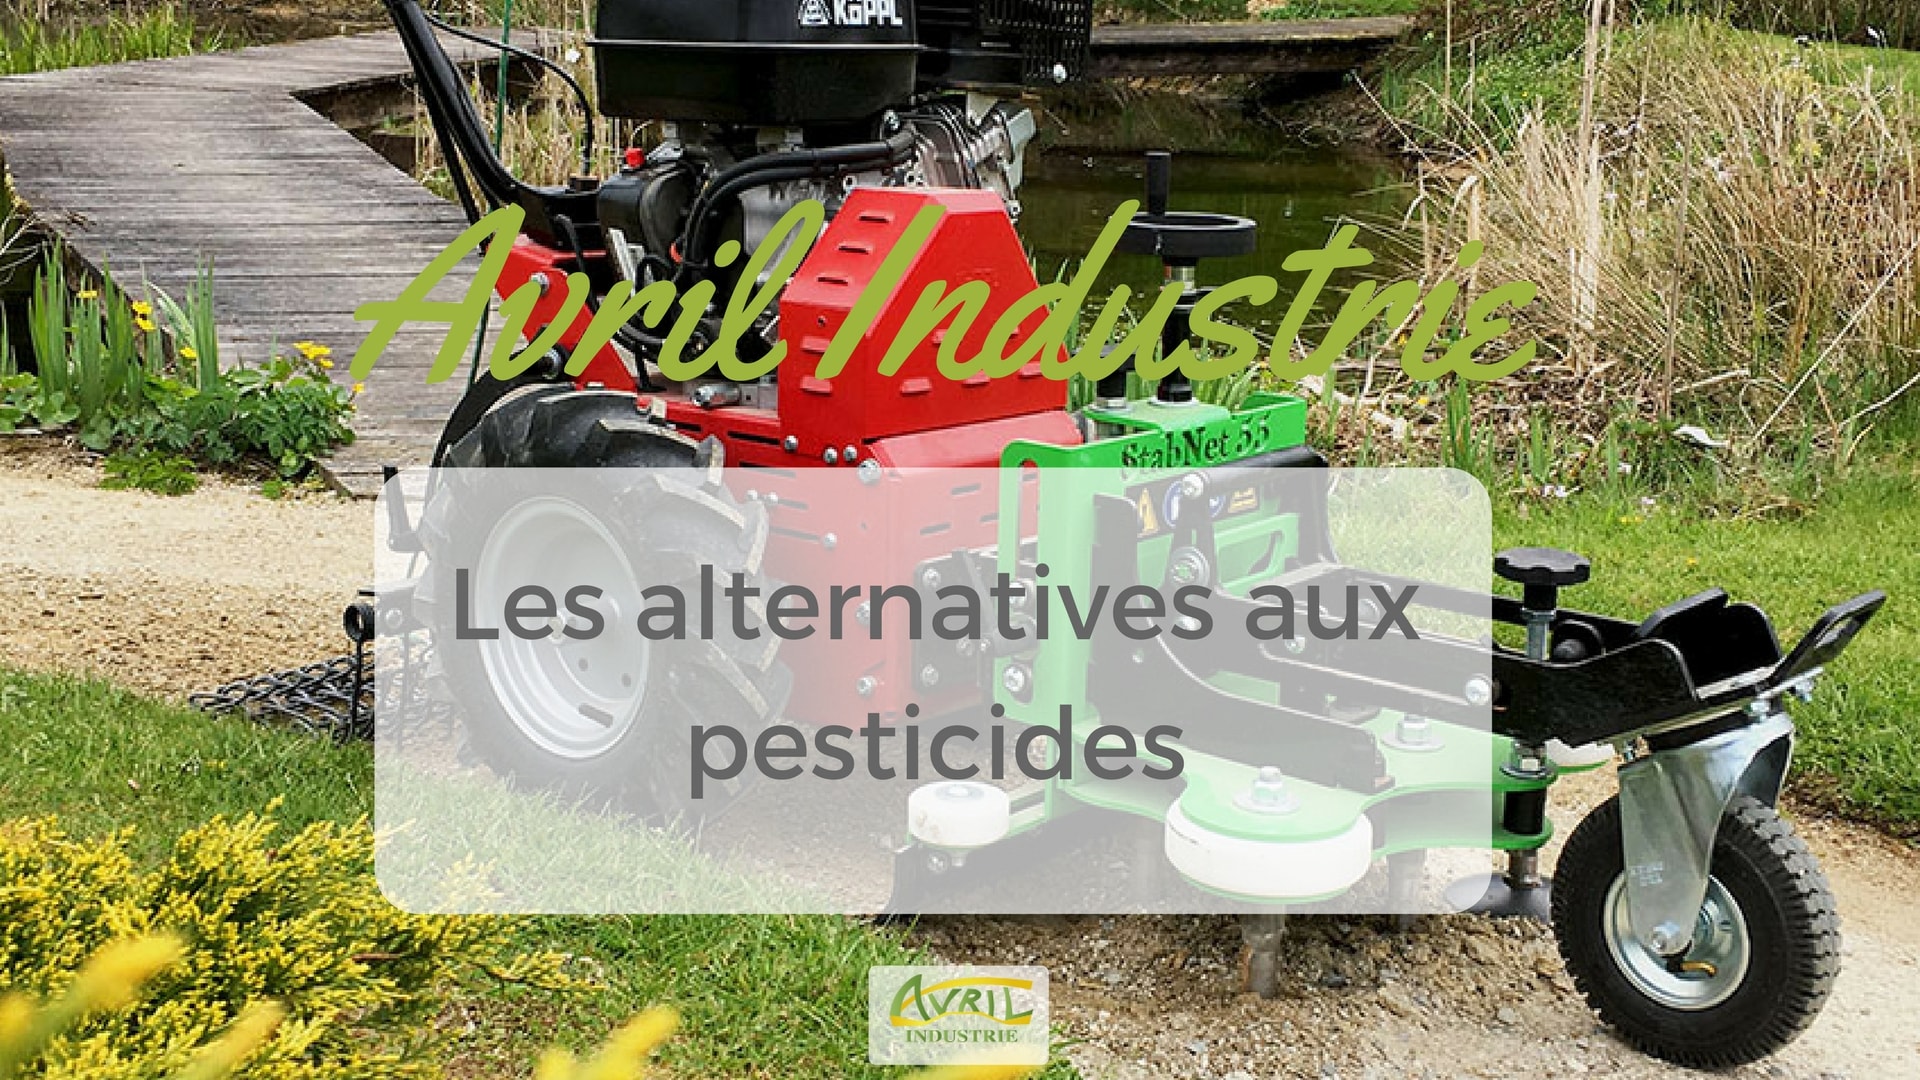 Alternatives aux pesticides